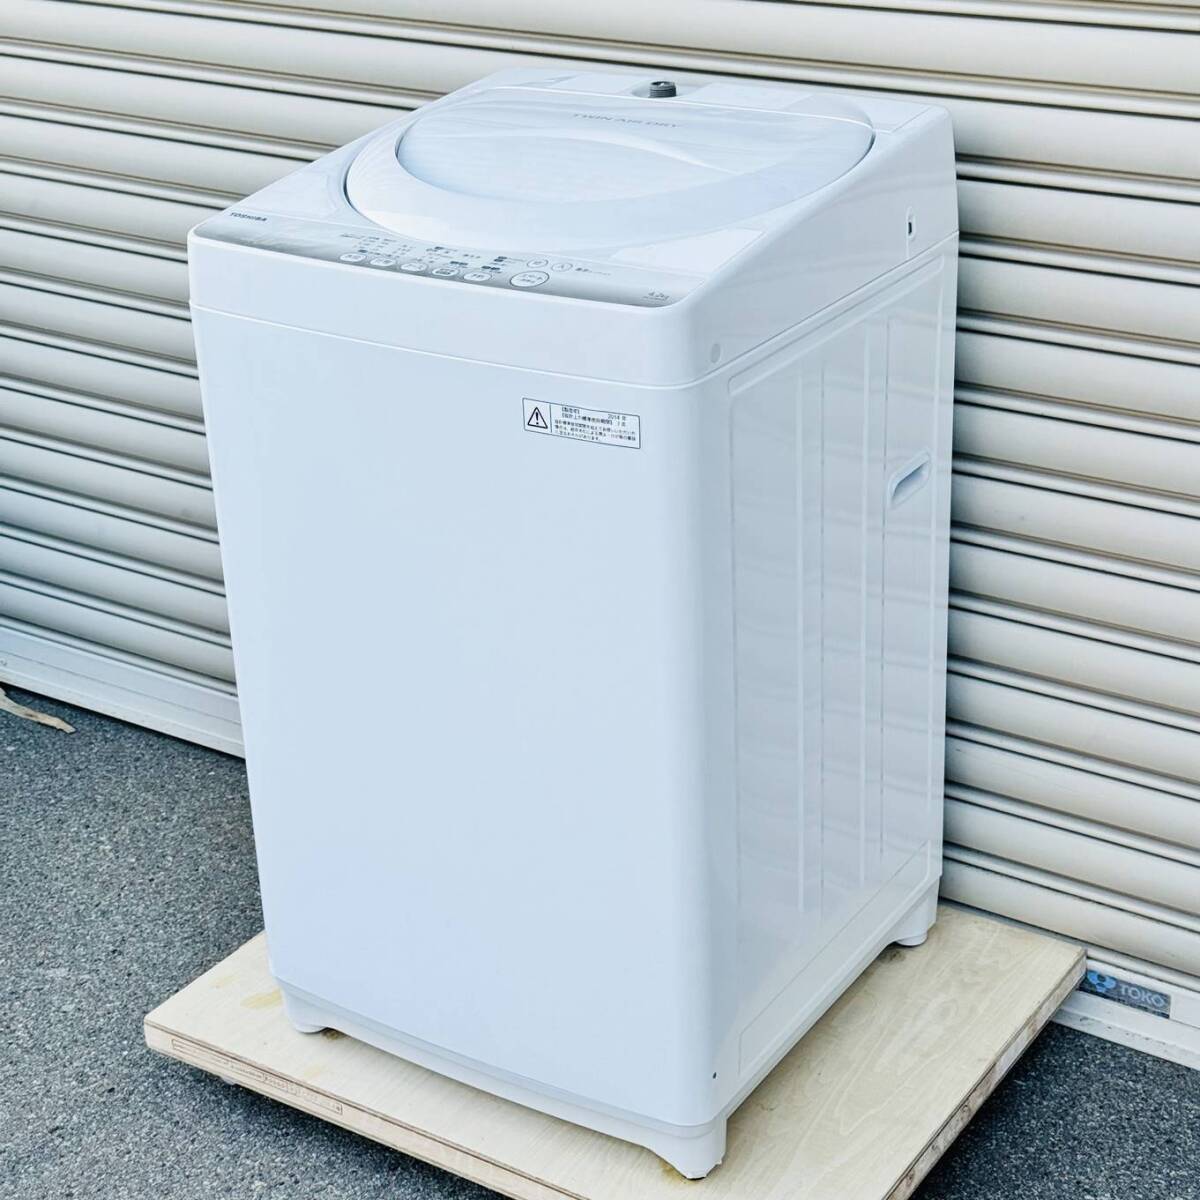 甲MJ17596 クリーニング済 動作確認済 2014年製 4.2㎏ 東芝 TOSHIBA 全自動電気洗濯機 AW-42SM ホース付 ホワイト 白色 家電の画像1